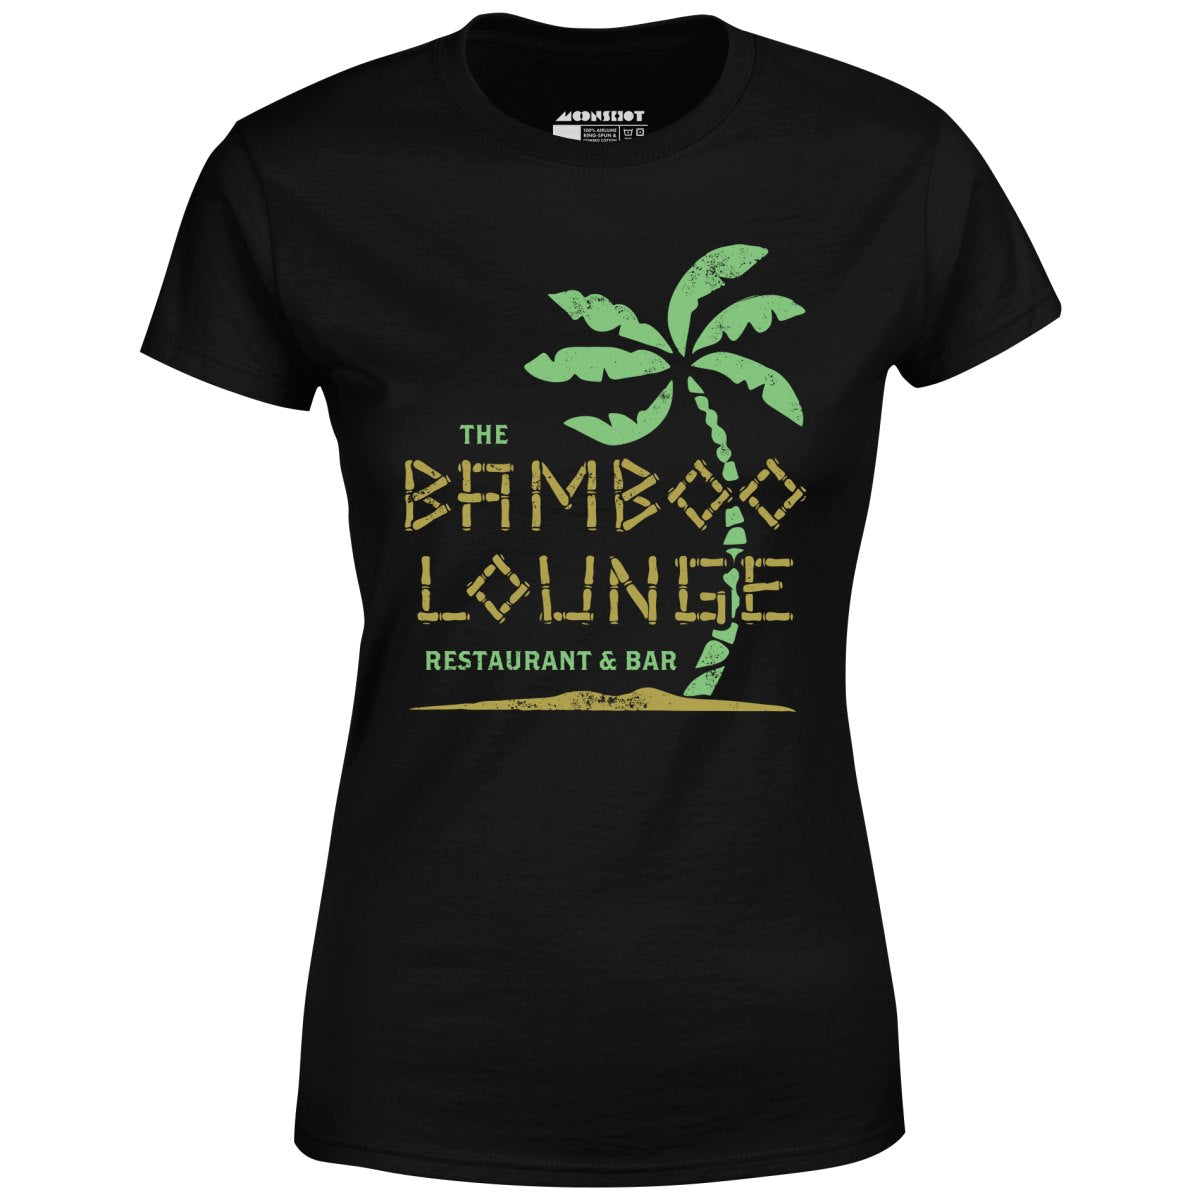 The Bamboo Lounge - Women's T-Shirt